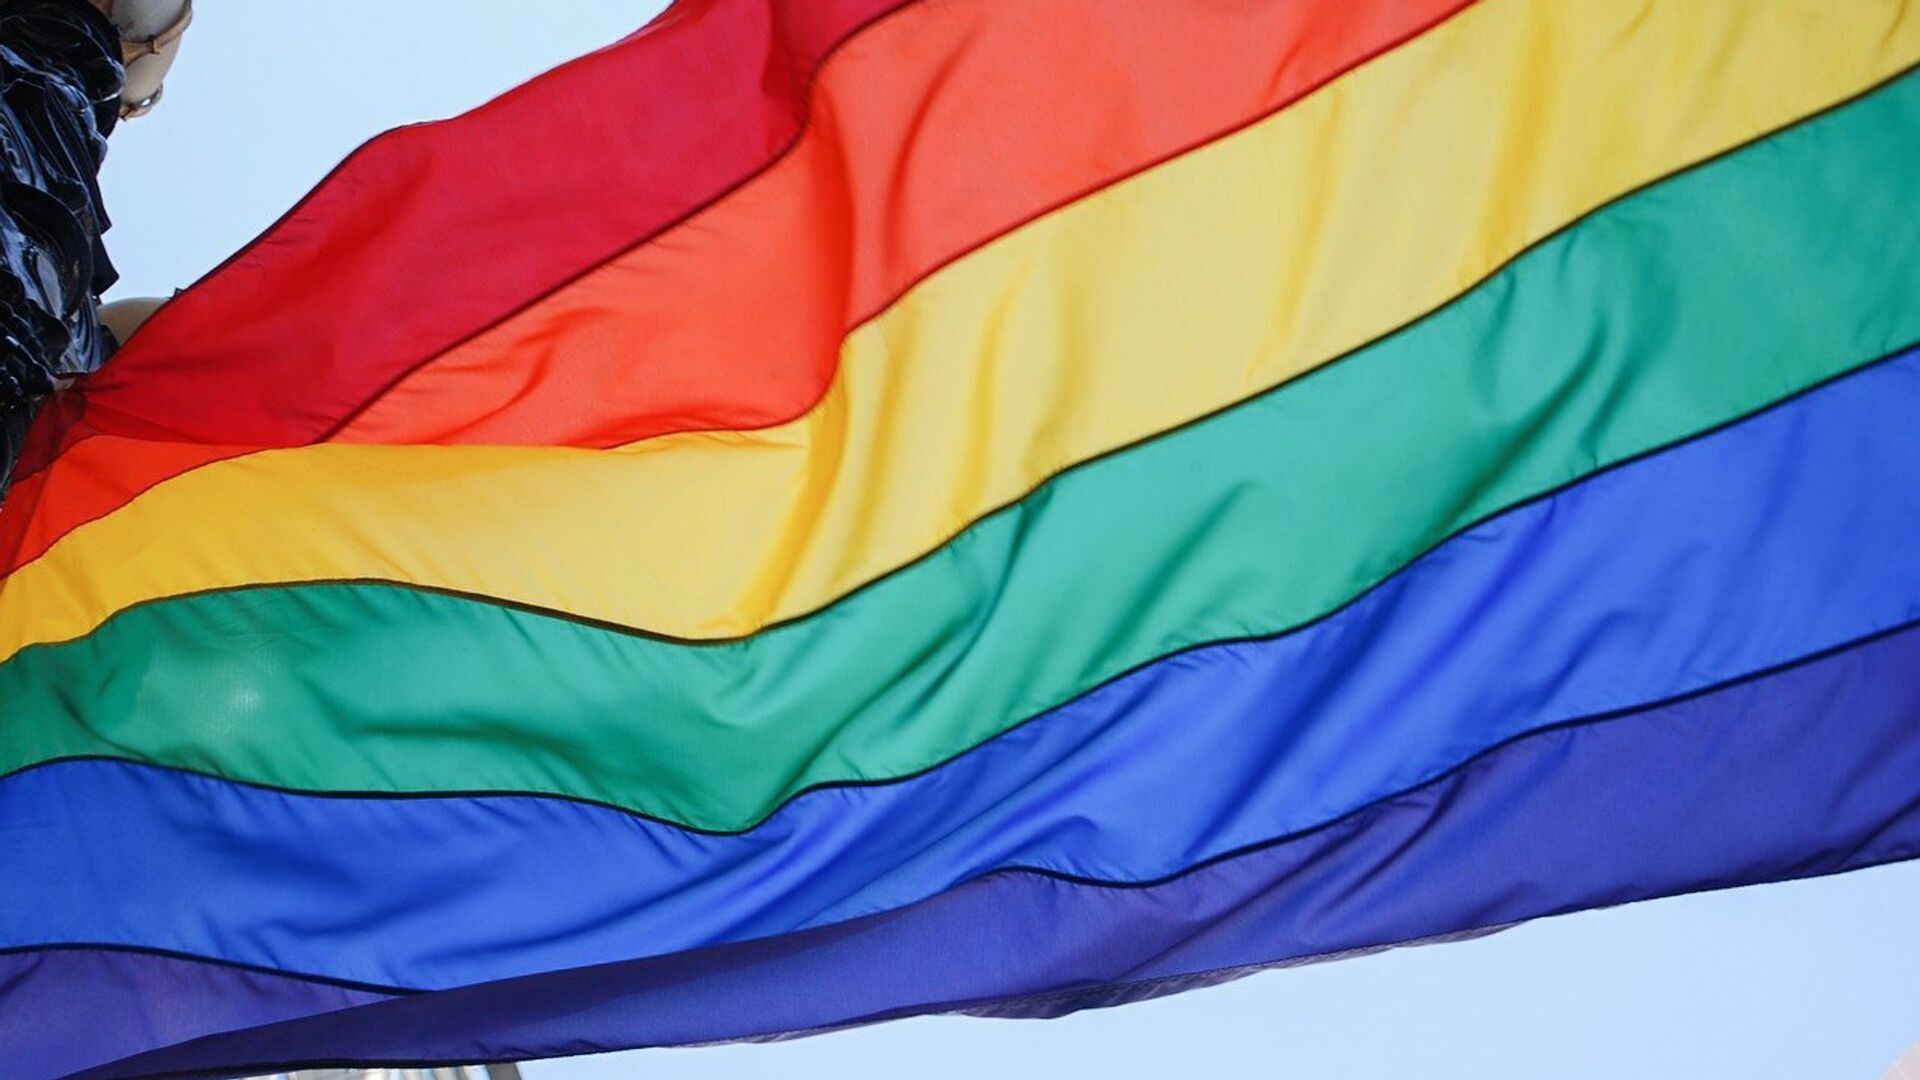 Bandera arcoíris, symbole du mouvement LGBT - Sputnik Afrique, 1920, 01.12.2021